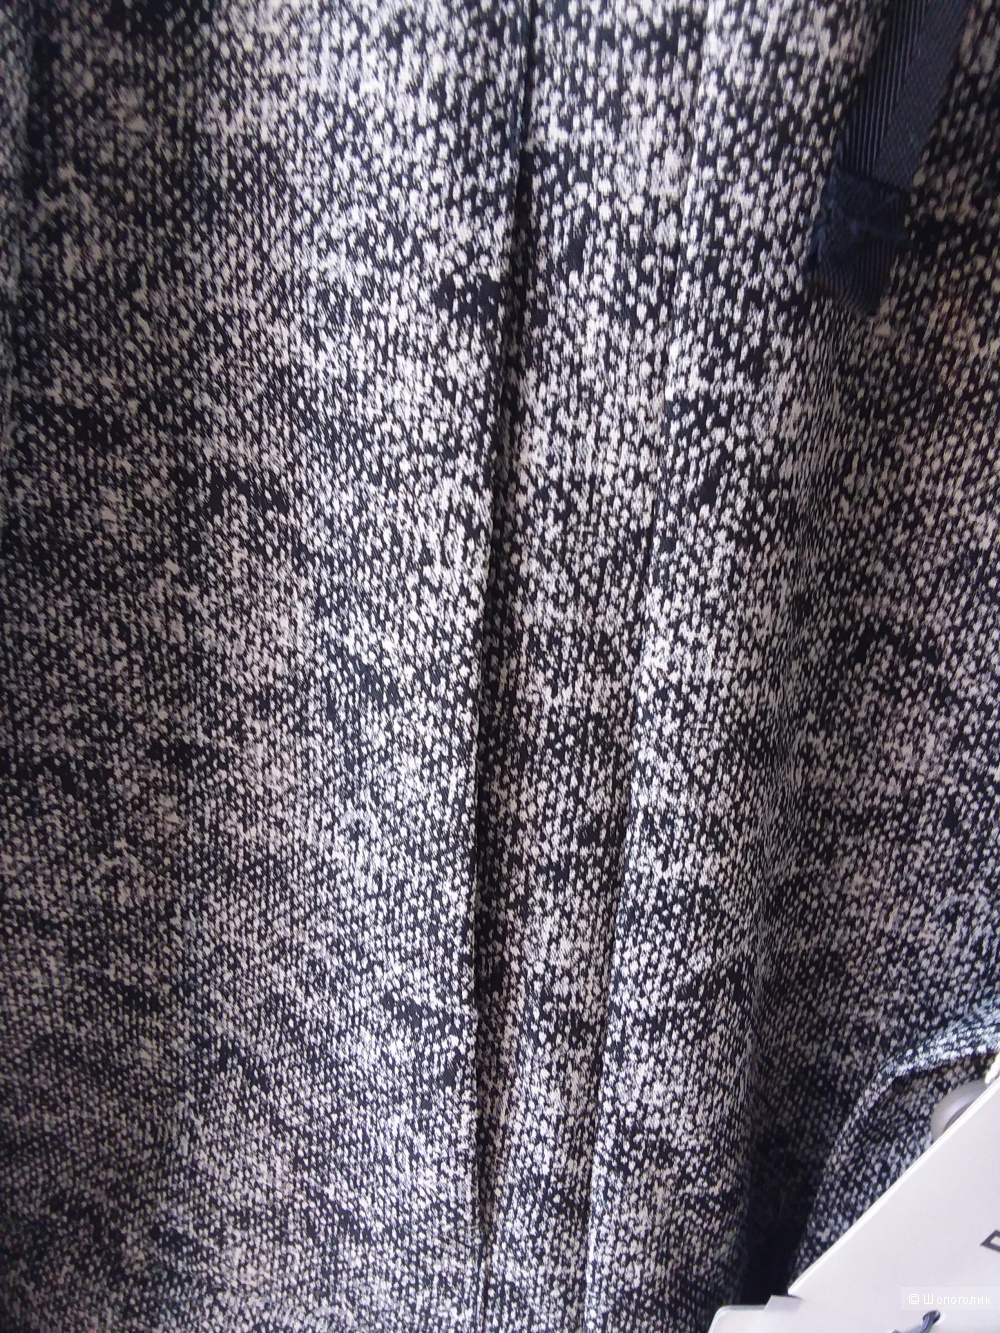 Мужская куртка Esemplare на 50 -52 размер